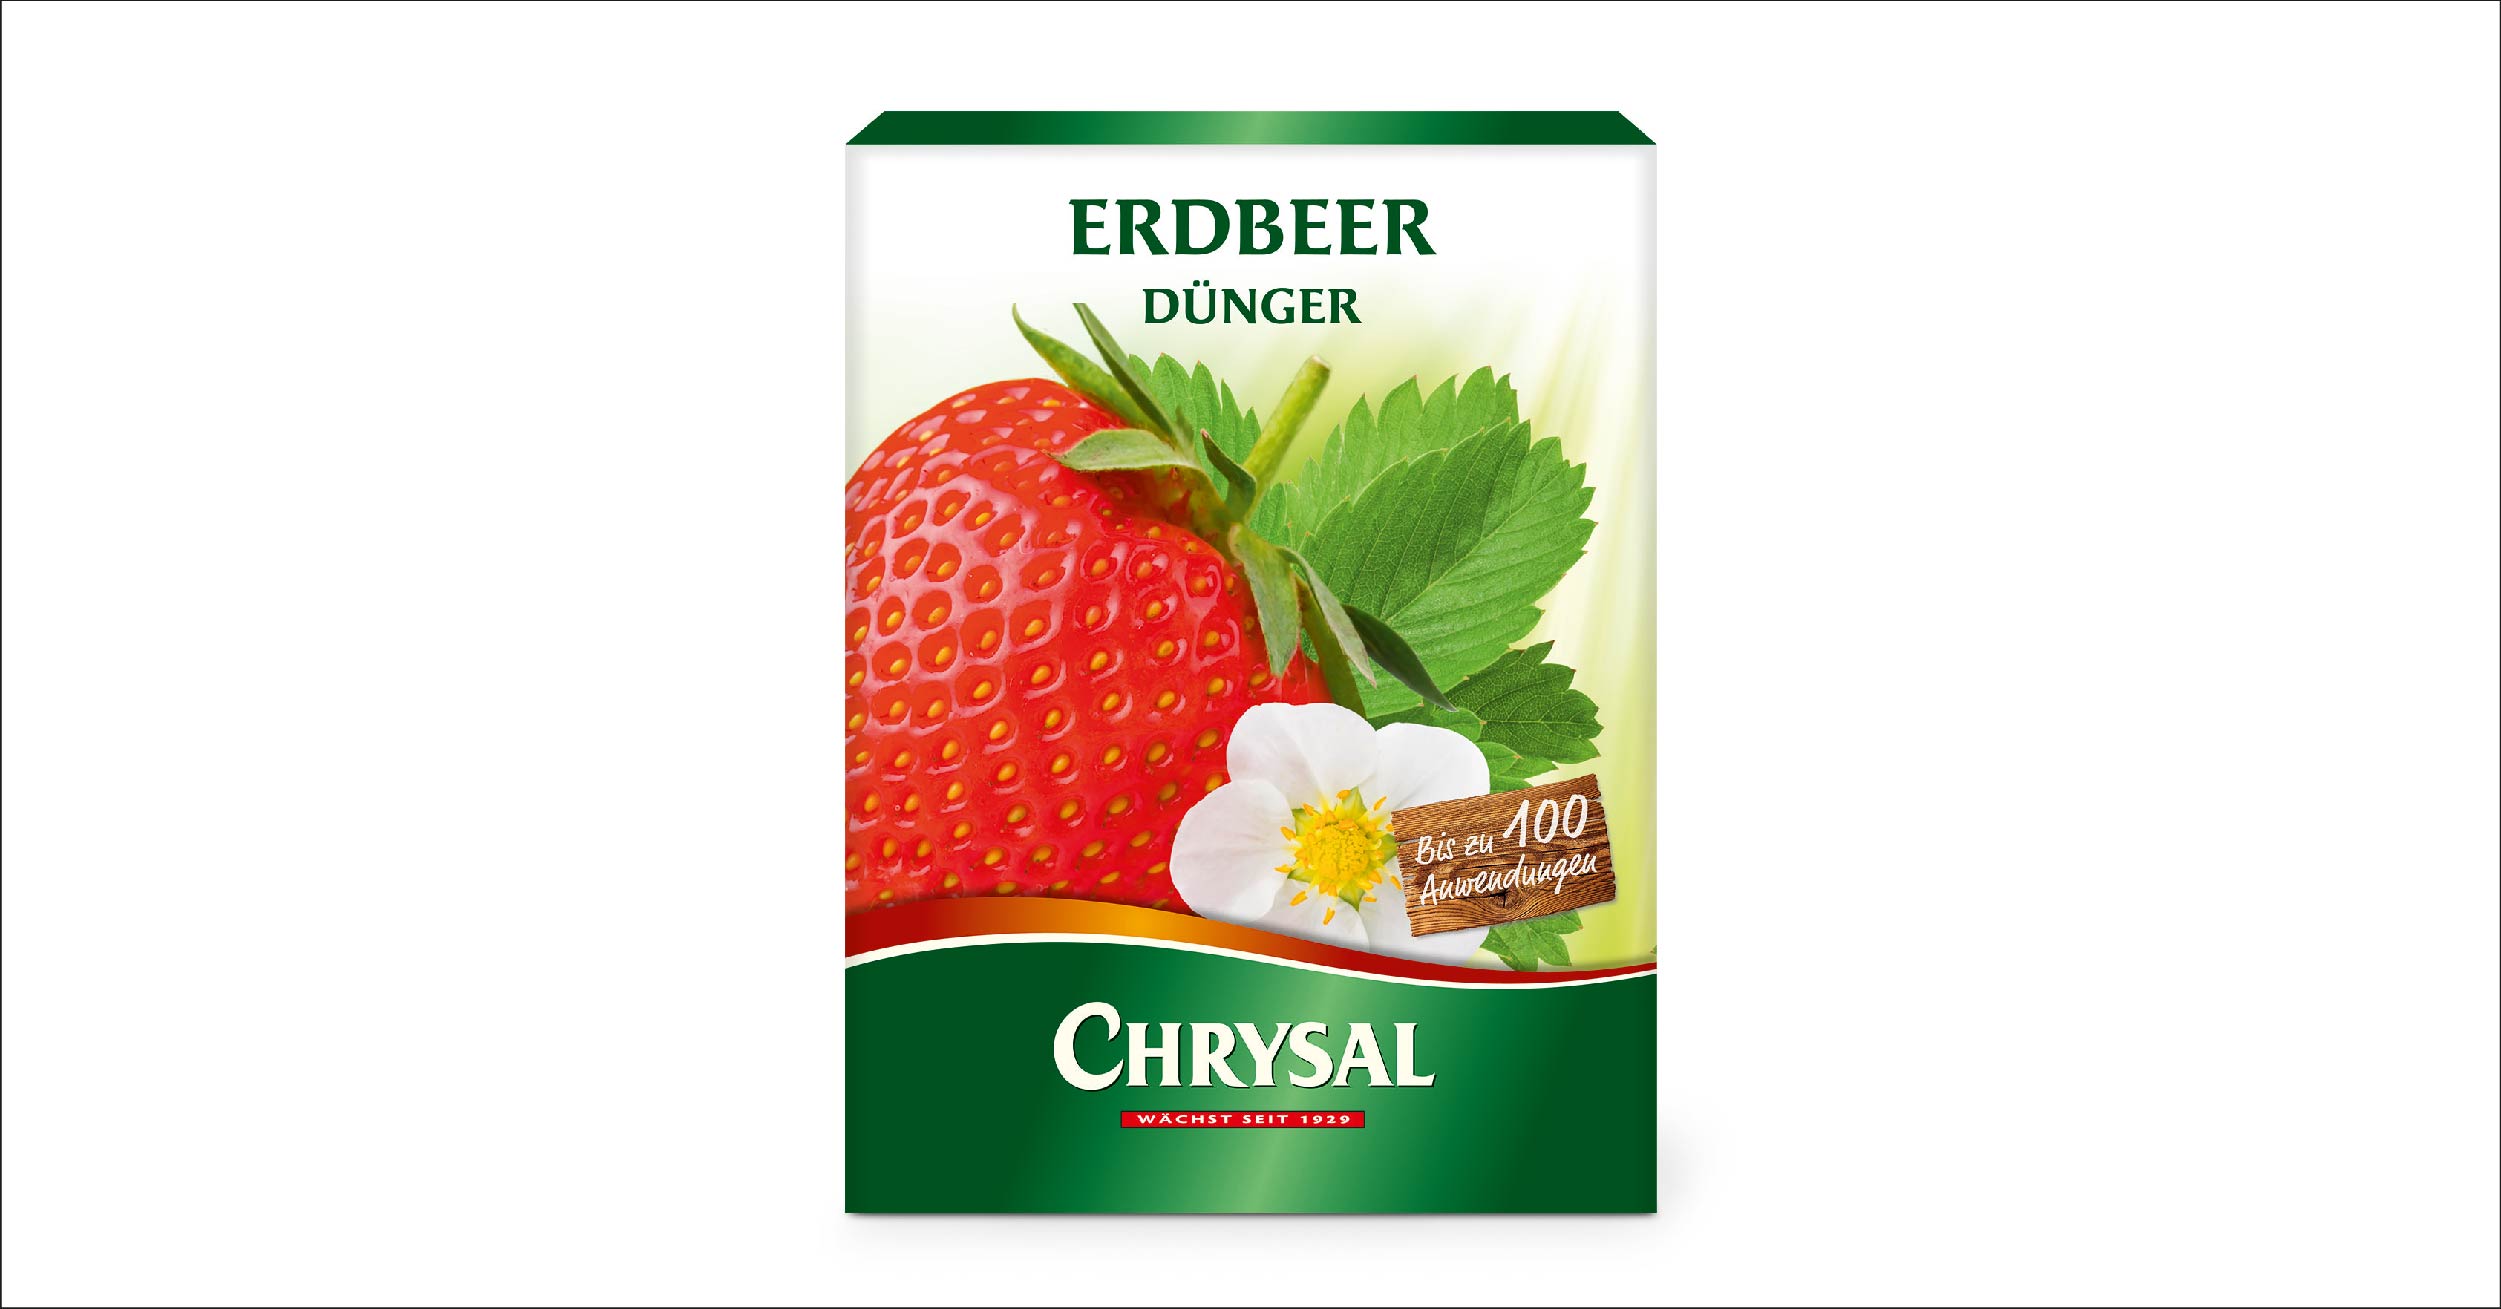 Chrysal Erdbeer Dünger